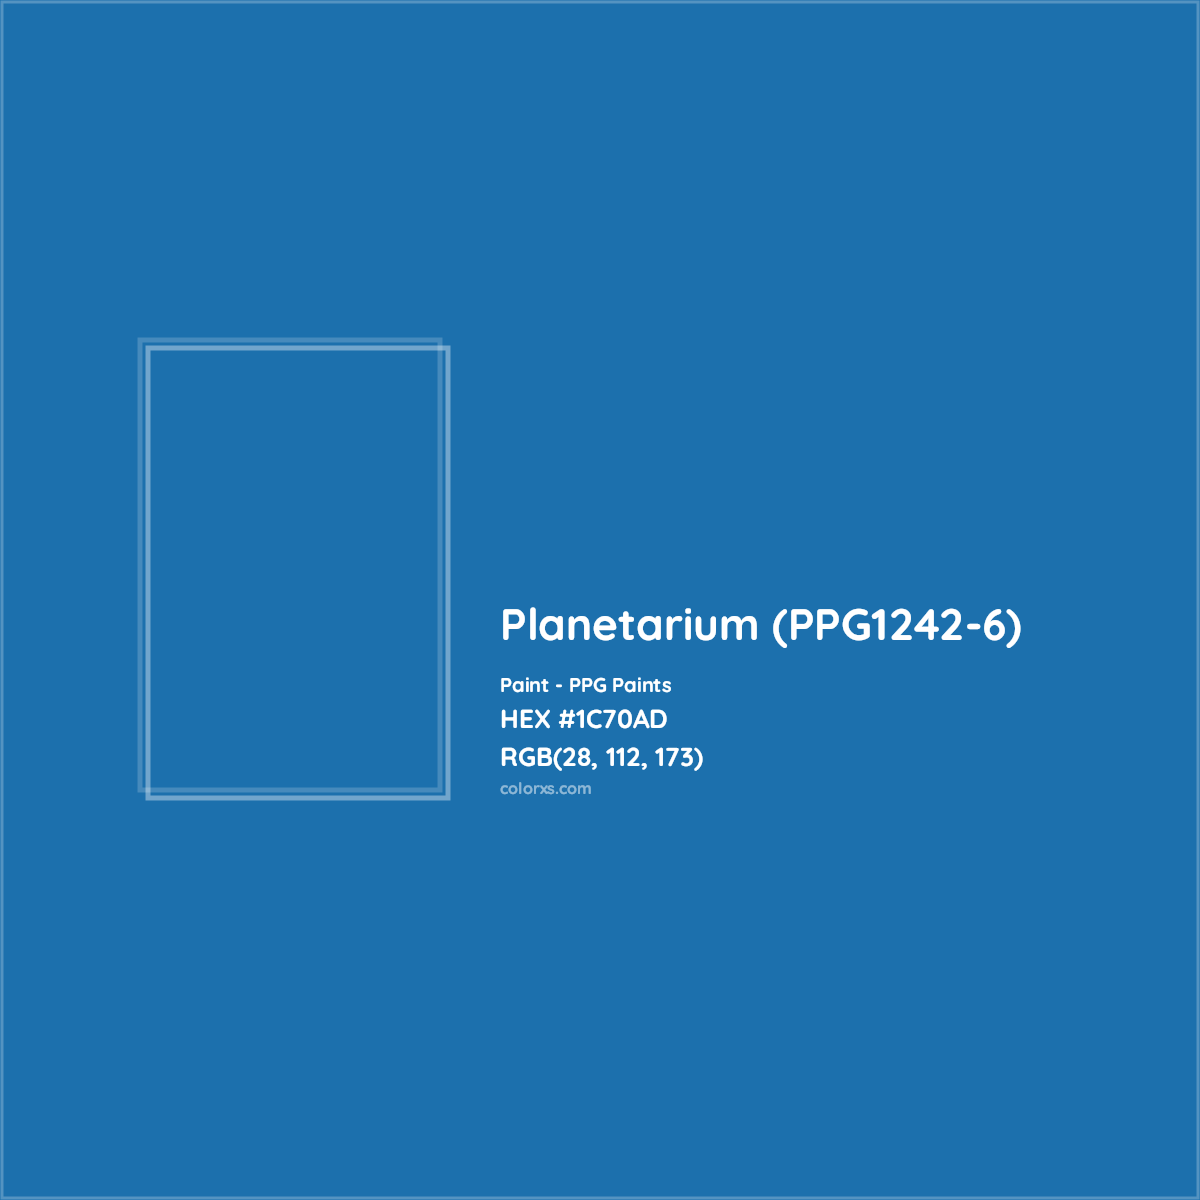 HEX #1C70AD Planetarium (PPG1242-6) Paint PPG Paints - Color Code